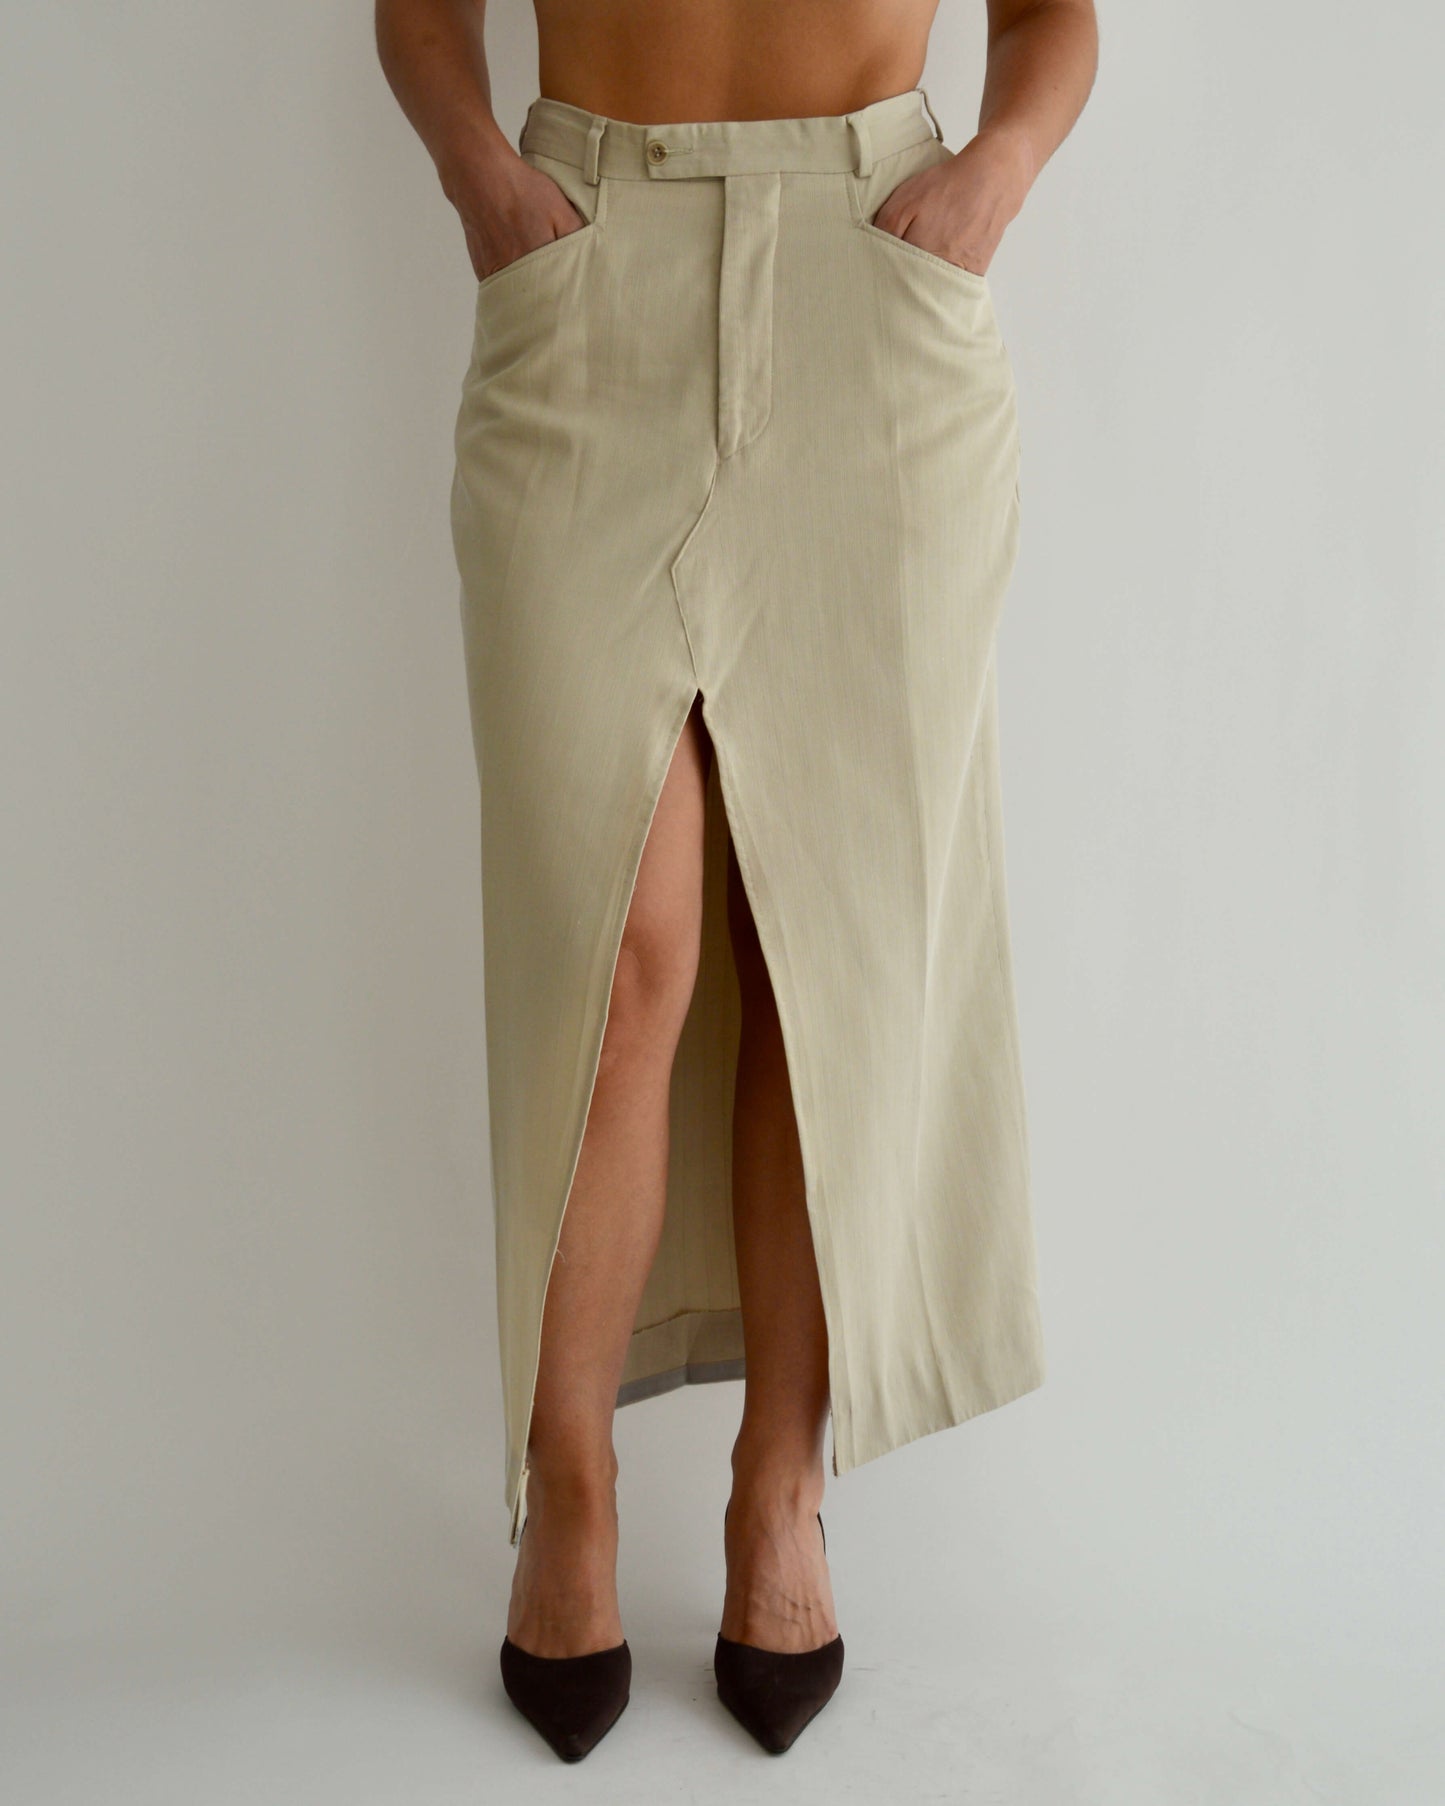 Long Skirt - Beige Texture (S/M)